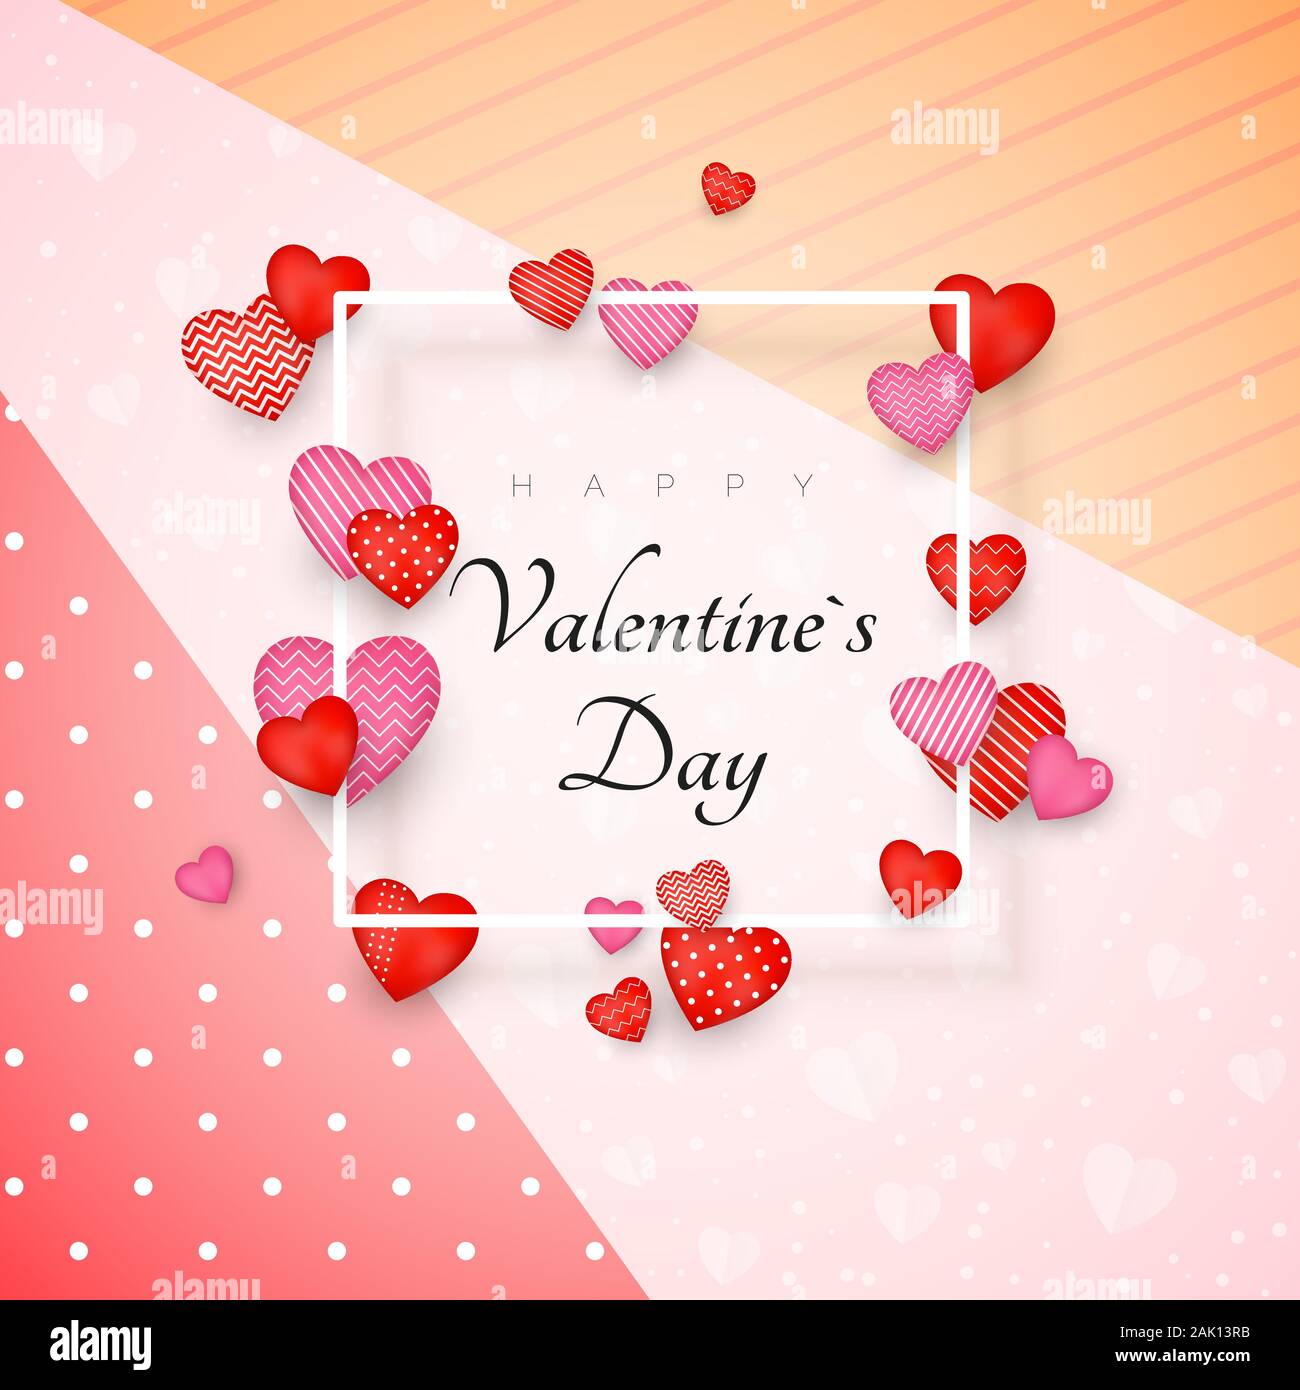 Happy Valentine's Day Grußkarte oder Einladung Design. Februar 14 Tag der Liebe und Romantik. My Valentine. Holiday Banner mit roten Herzen und wh Stock Vektor